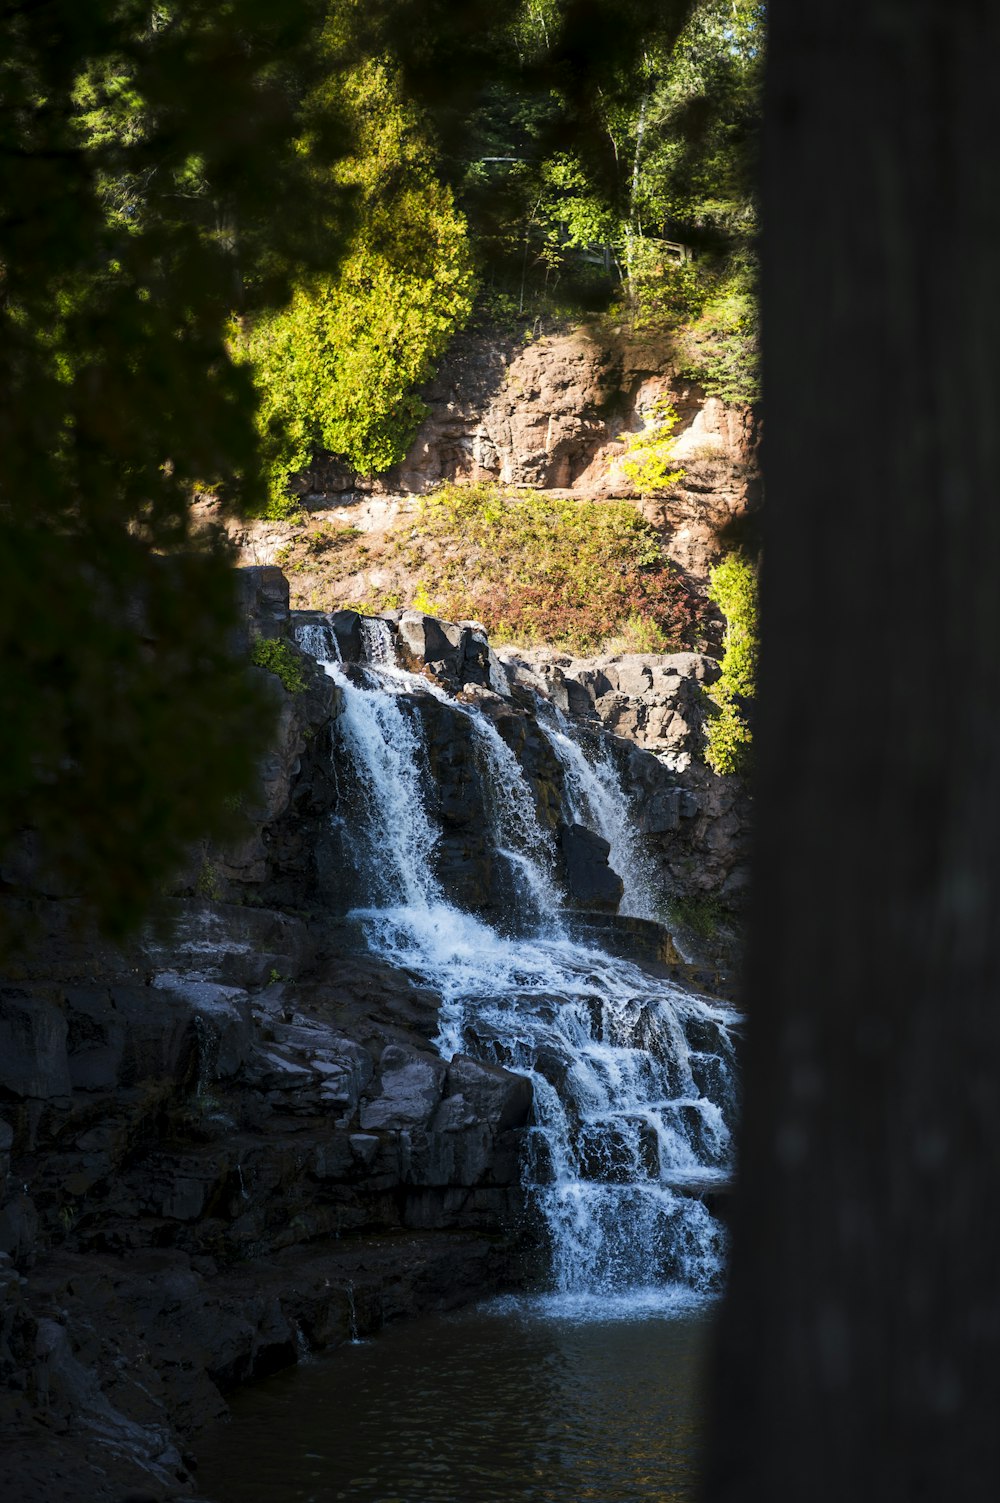 Una cascada se ve a través de los árboles cerca de un cuerpo de agua